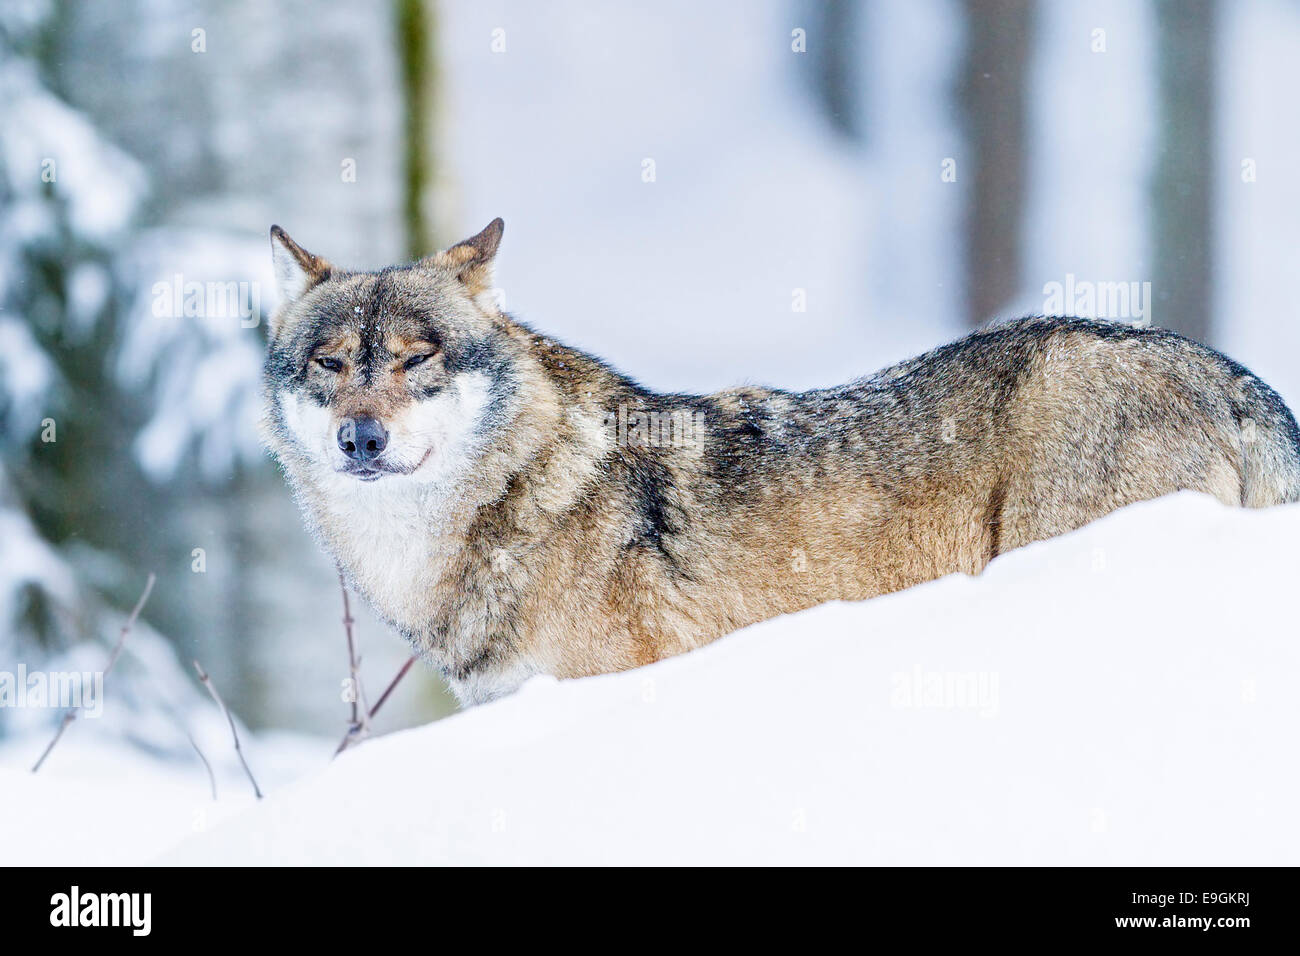 Gris cautivo el lobo (Canis lupus) macho alfa en la nieve. Foto de stock